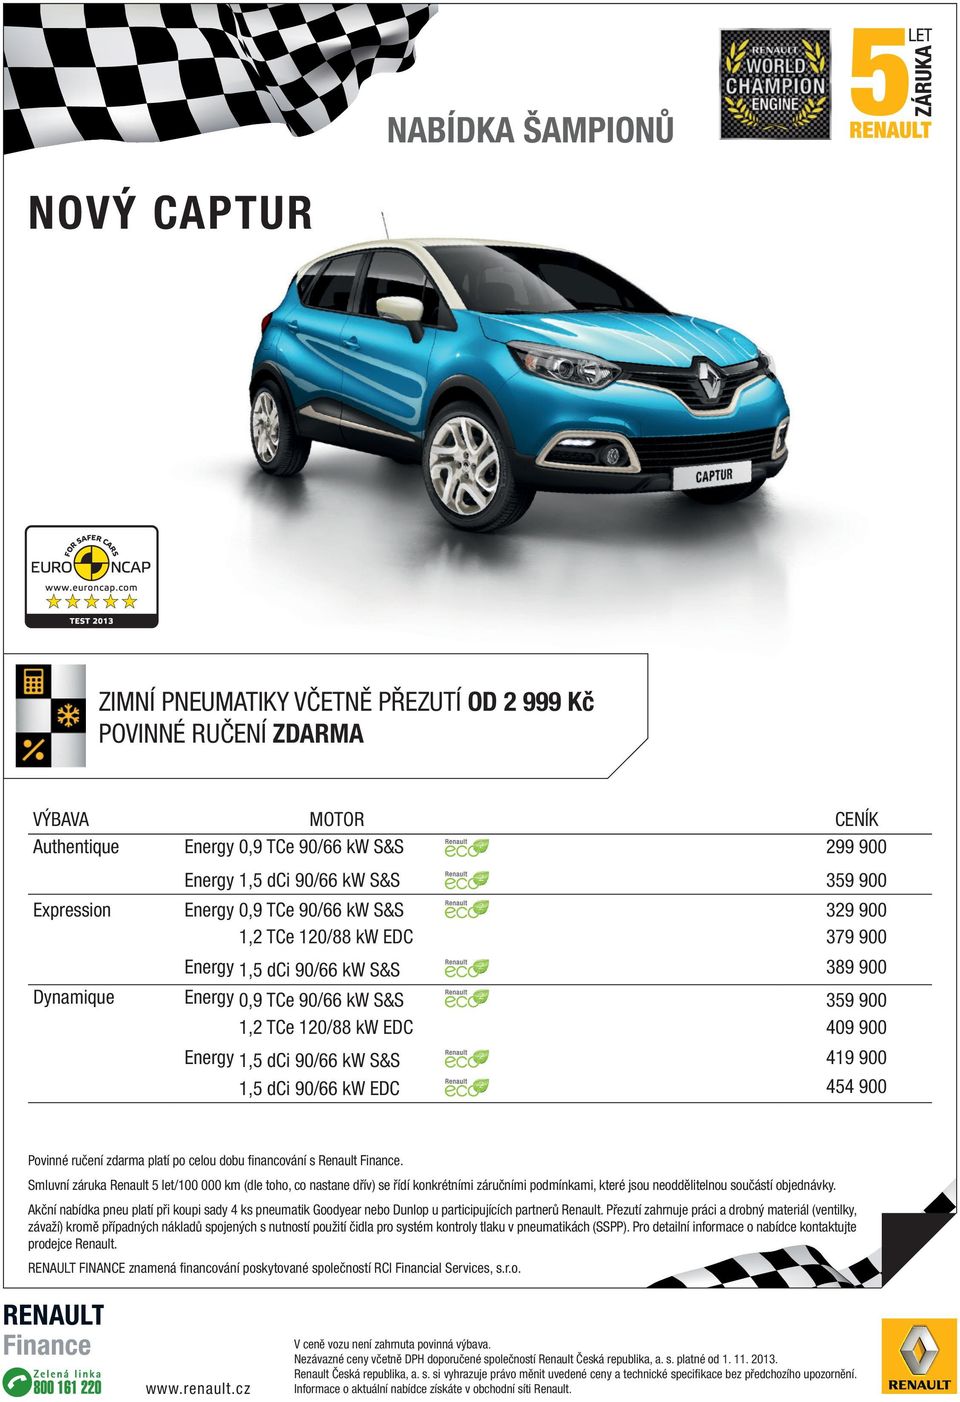 dci 90/66 kw S&S 419 900 1,5 dci 90/66 kw EDC 454 900 Povinné ručení zdarma platí po celou dobu financování s Renault Finance.